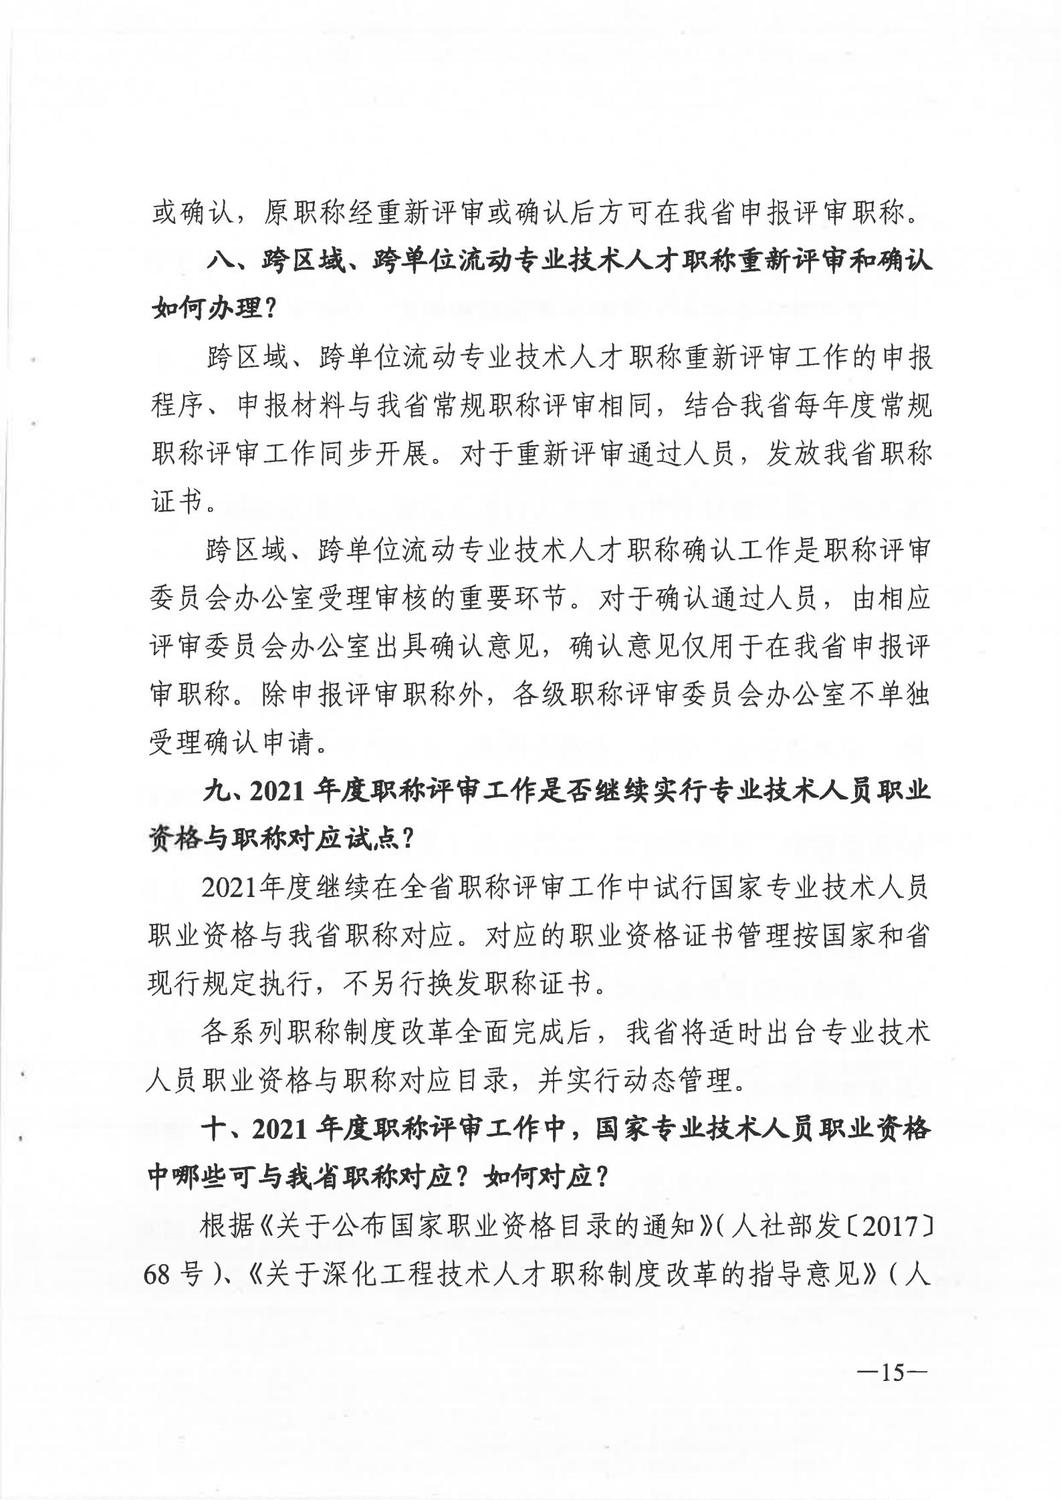 广东省人力资源和社会保障厅《关于做好2021年度职称评审工作的通知》_14.jpg